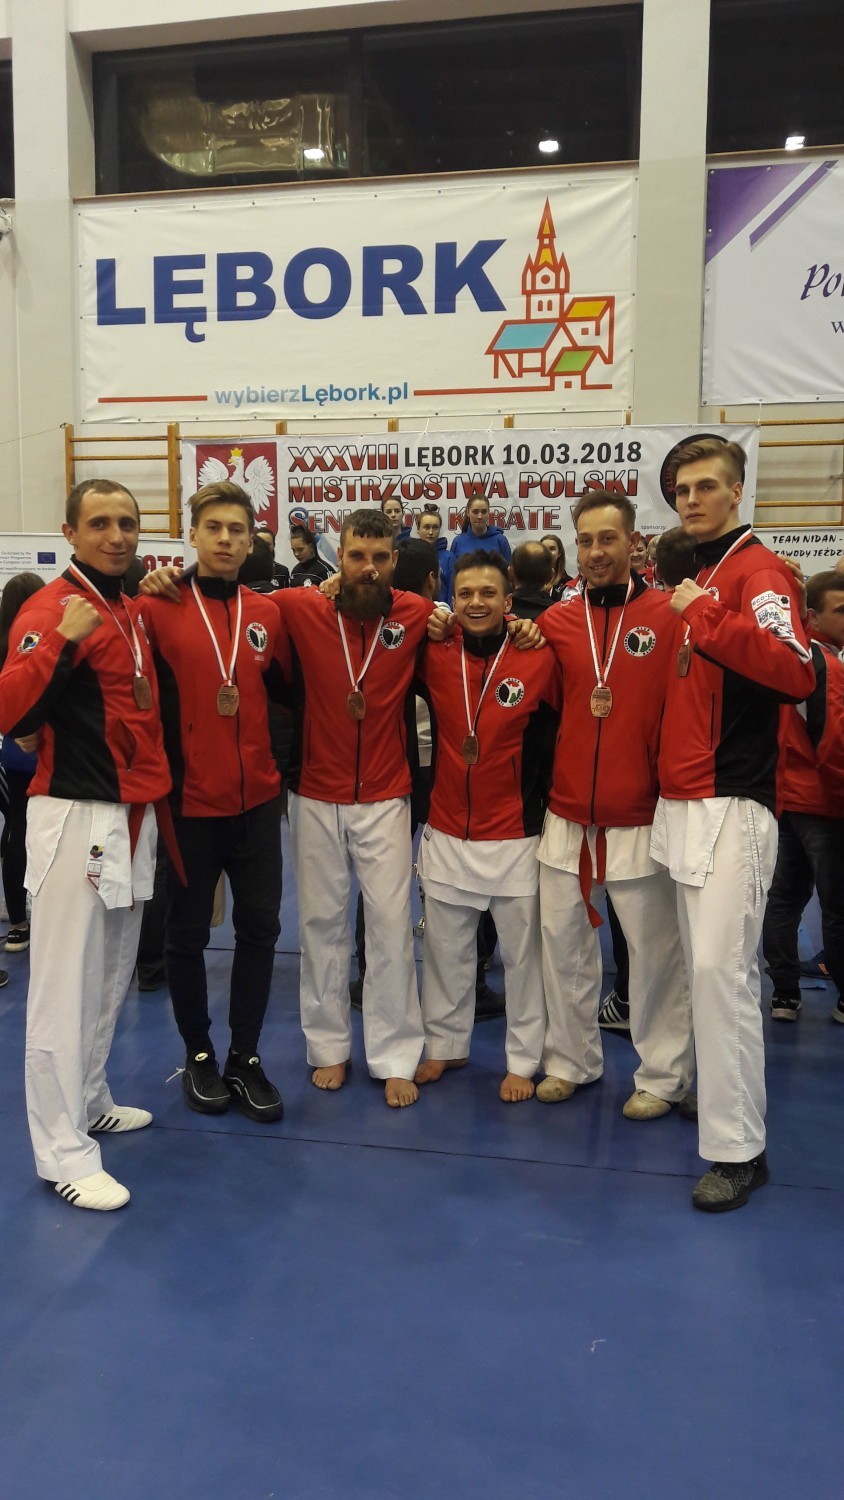 Trzy medale wywalczył Bartłomiej Sołtysiak na Mistrzostwach Polski w karate olimpijskim, które odbyły się w Lęborku